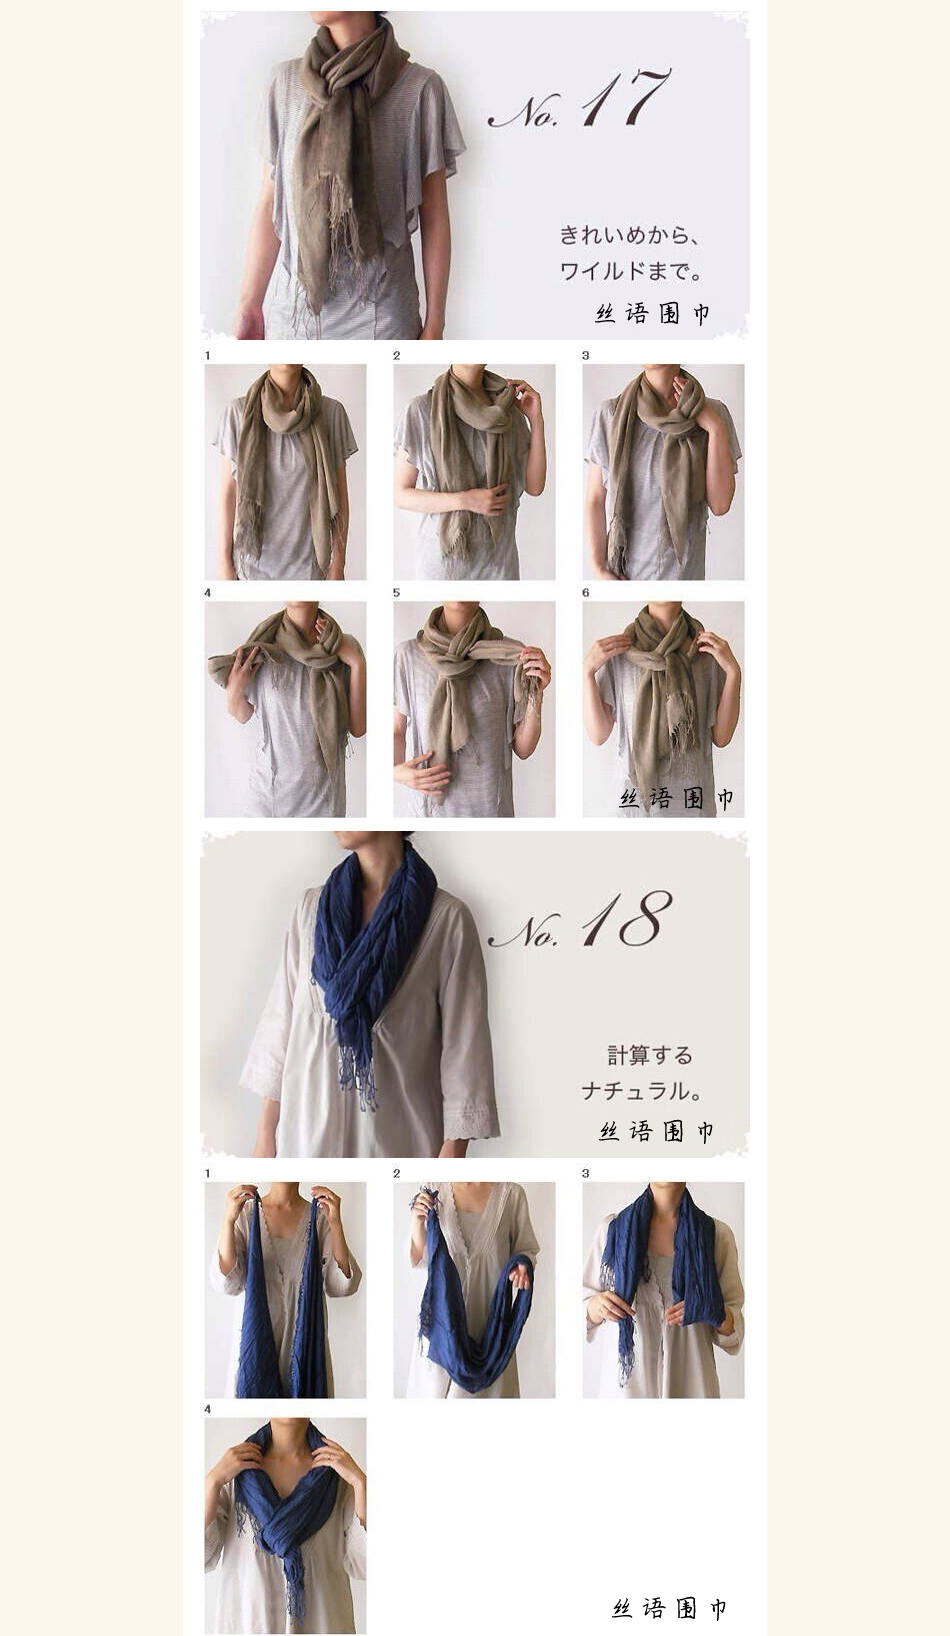 纱巾围巾的各种围法图片